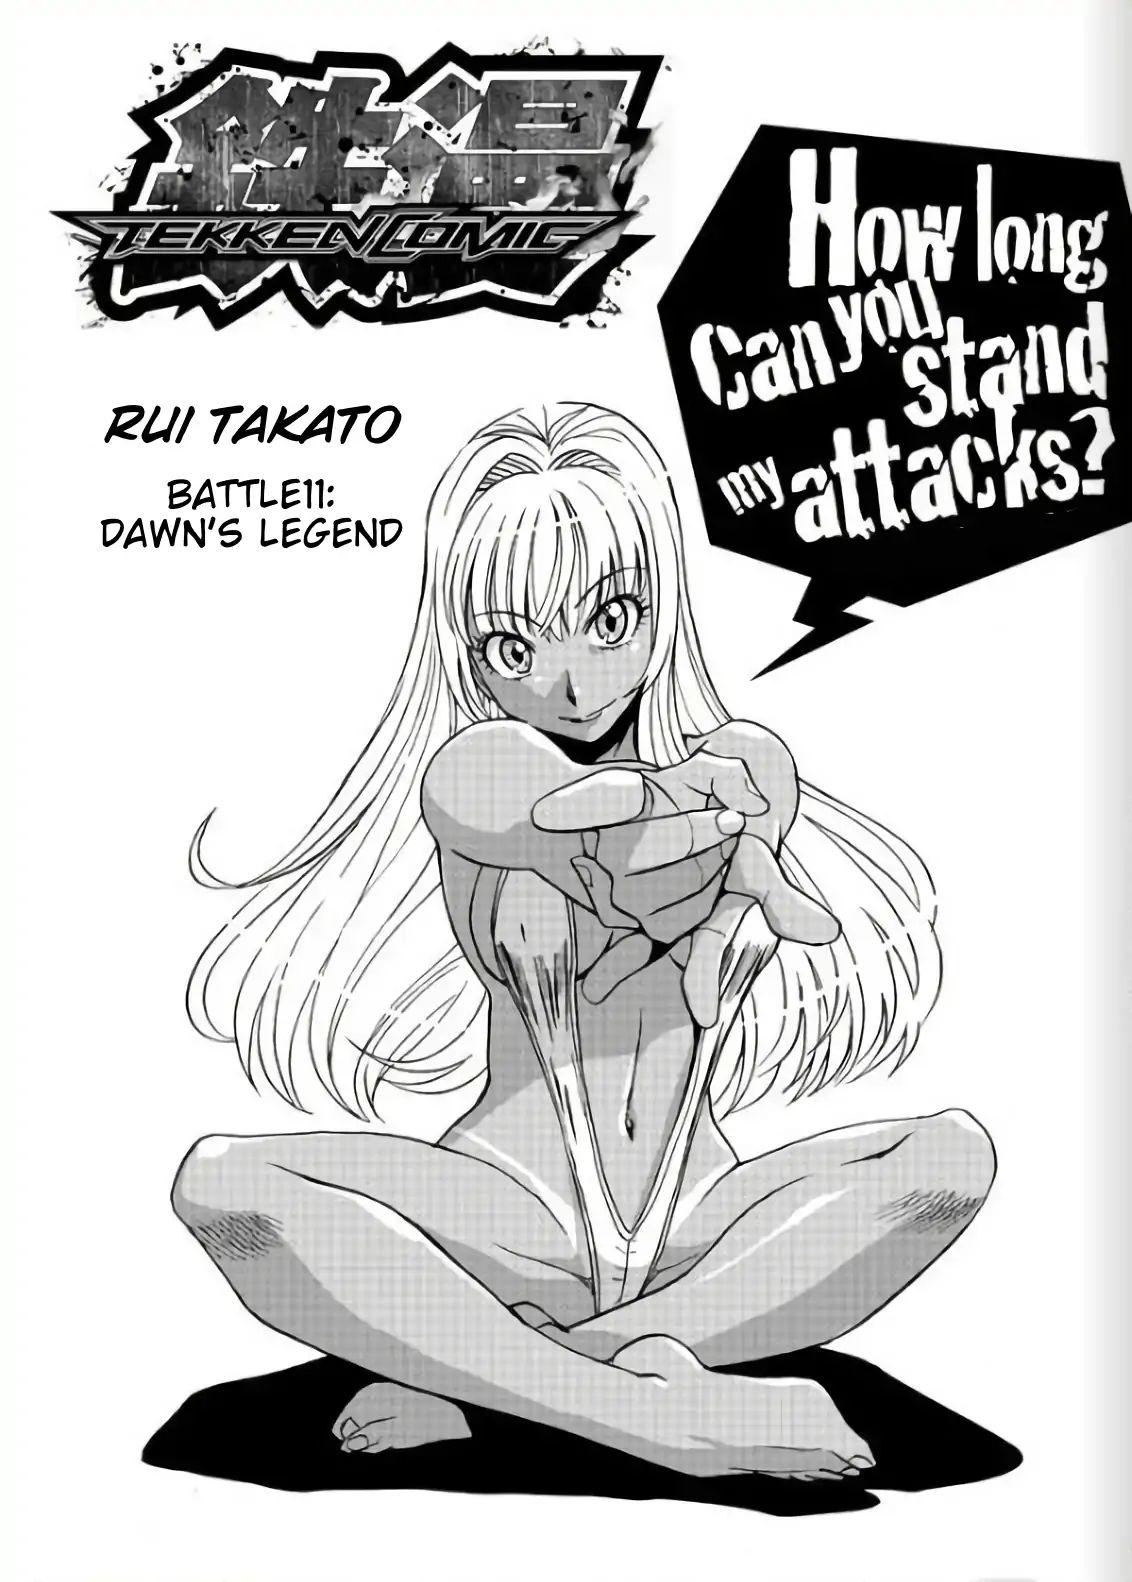 Read Tetsuman - Tekken Comic Vol.2 Chapter 11: Dawn S Legend [End] on  Mangakakalot